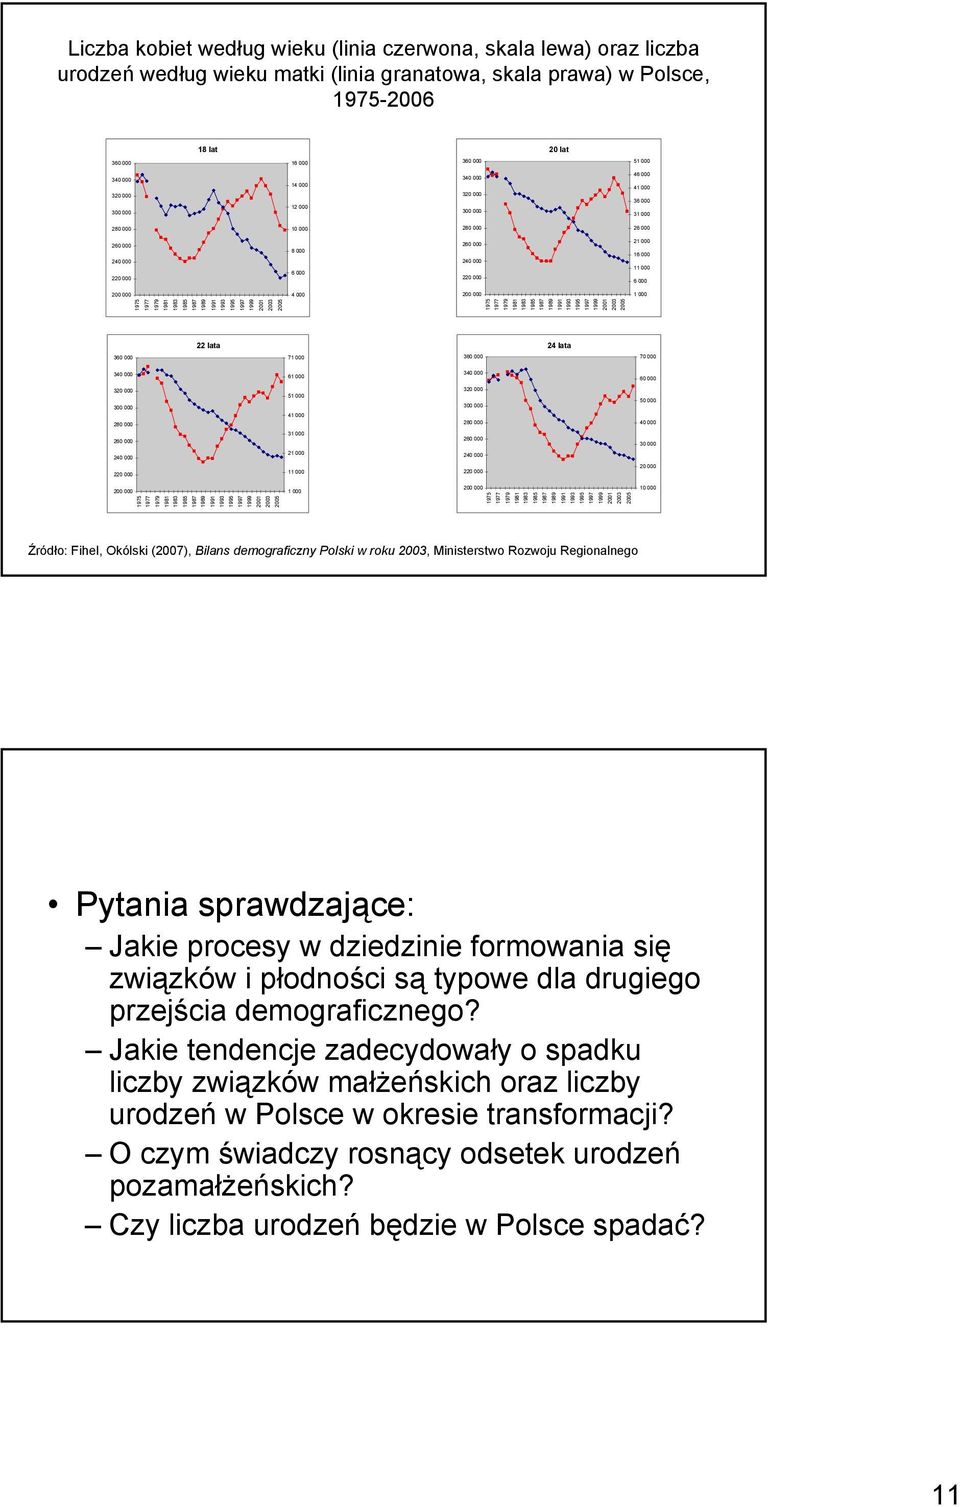 Źródło: Fihel, Okólski (2007), Bilans demograficzny Polski w roku, Ministerstwo Rozwoju Regionalnego Pytania sprawdzające: Jakie procesy w dziedzinie formowania się związków i płodności są typowe dla